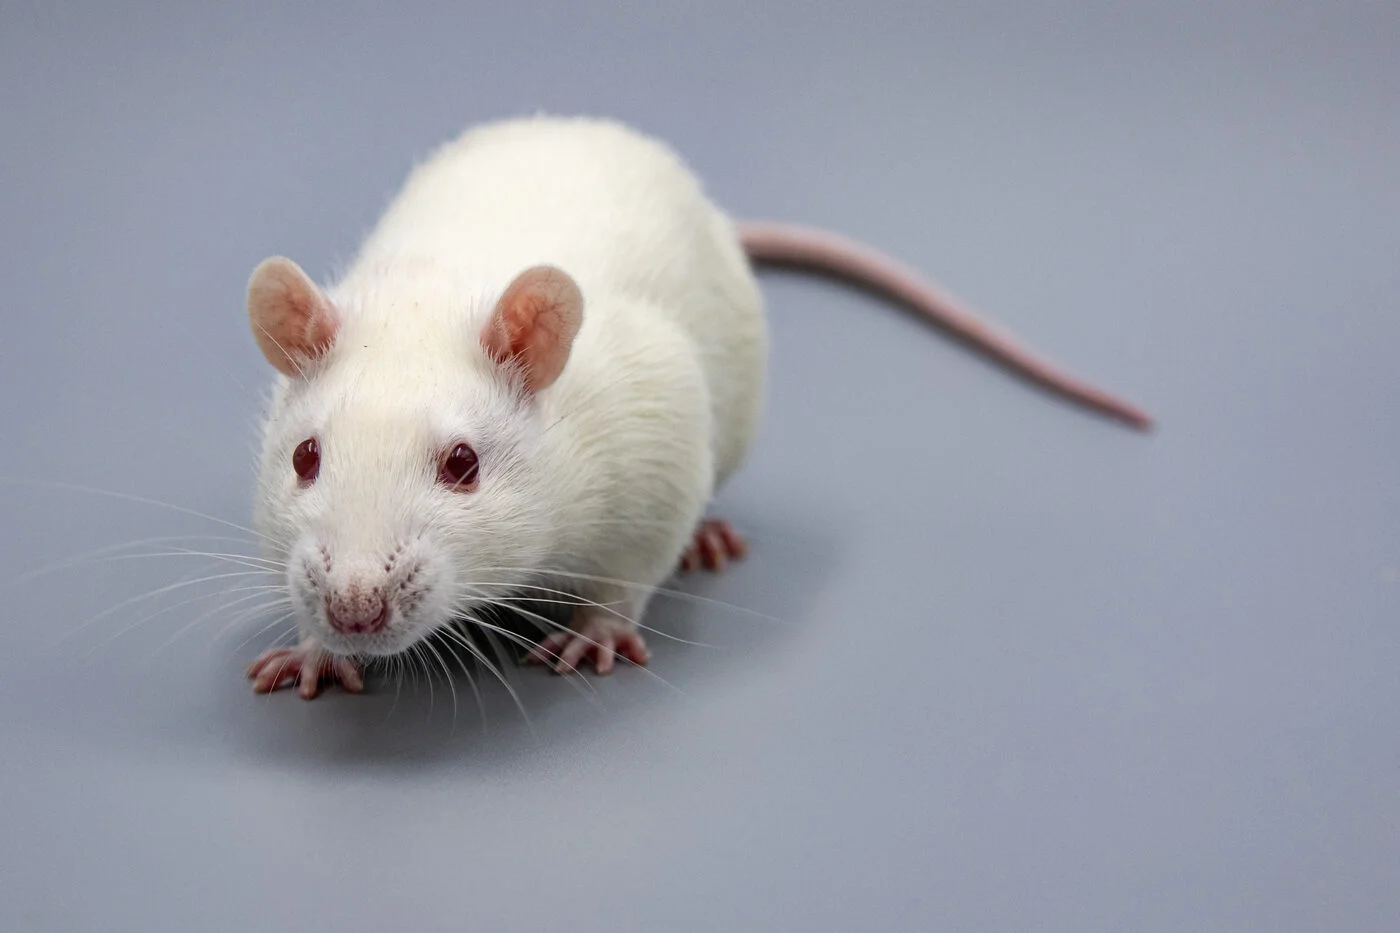 лабораторная крыса